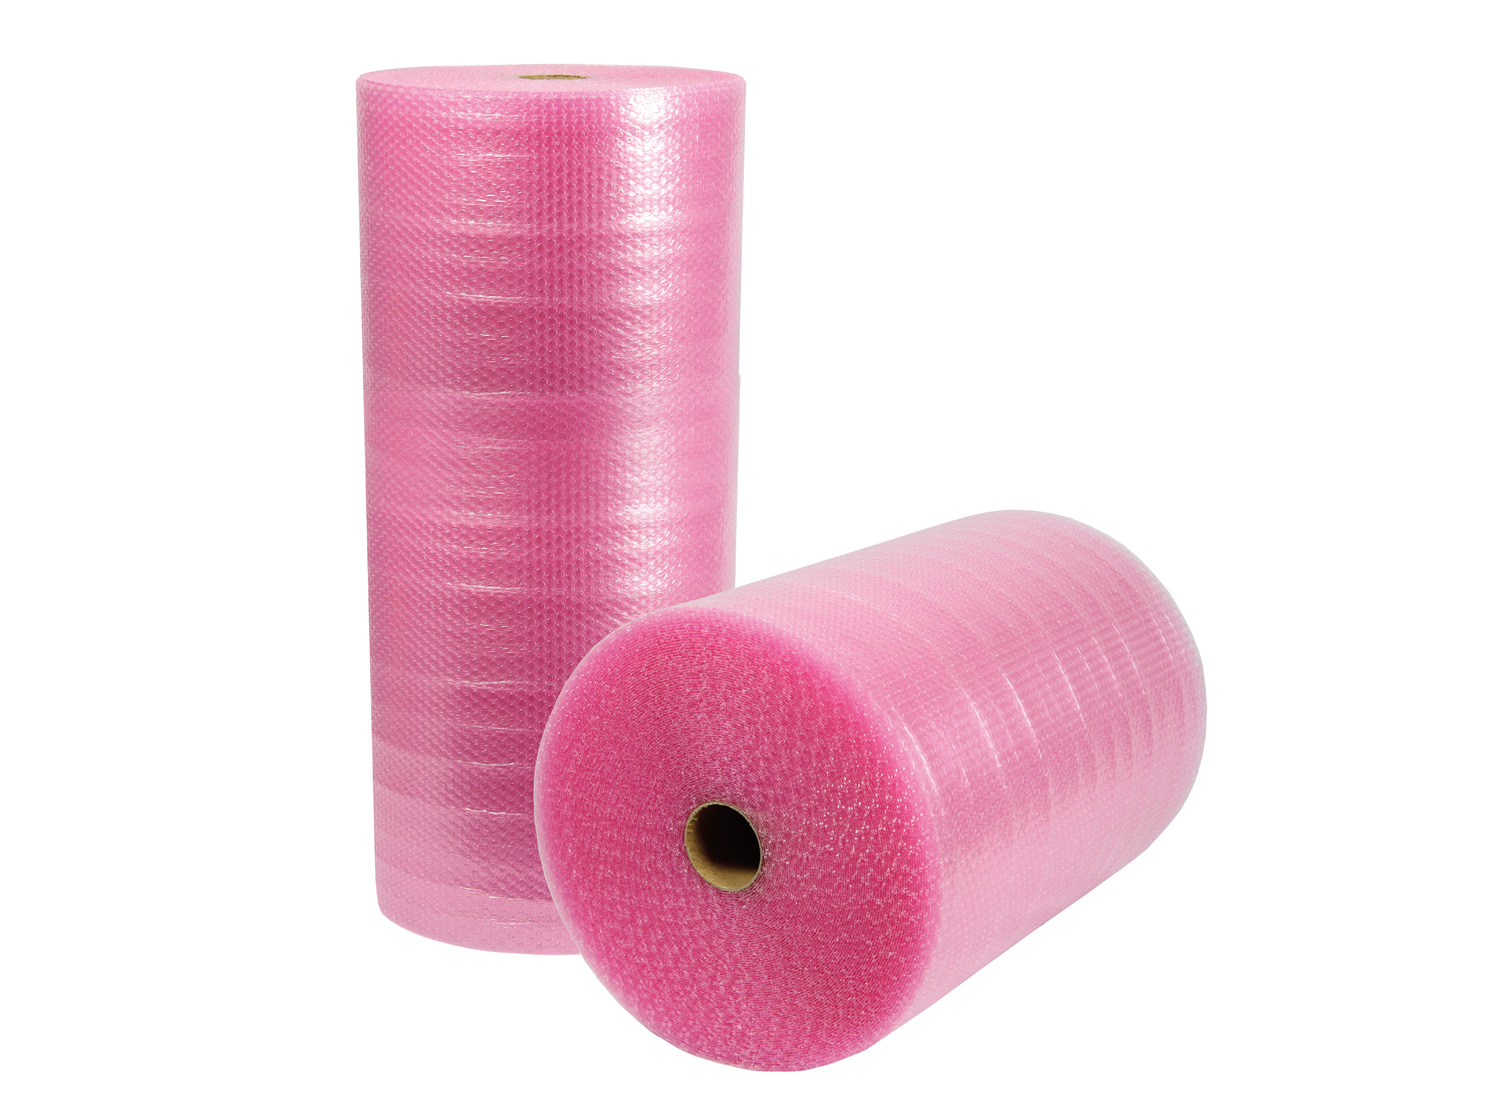 Luftpolsterfolie, 3-lagig, 1000mm breitx50lfm, 100µ,, rosa, antistatisch